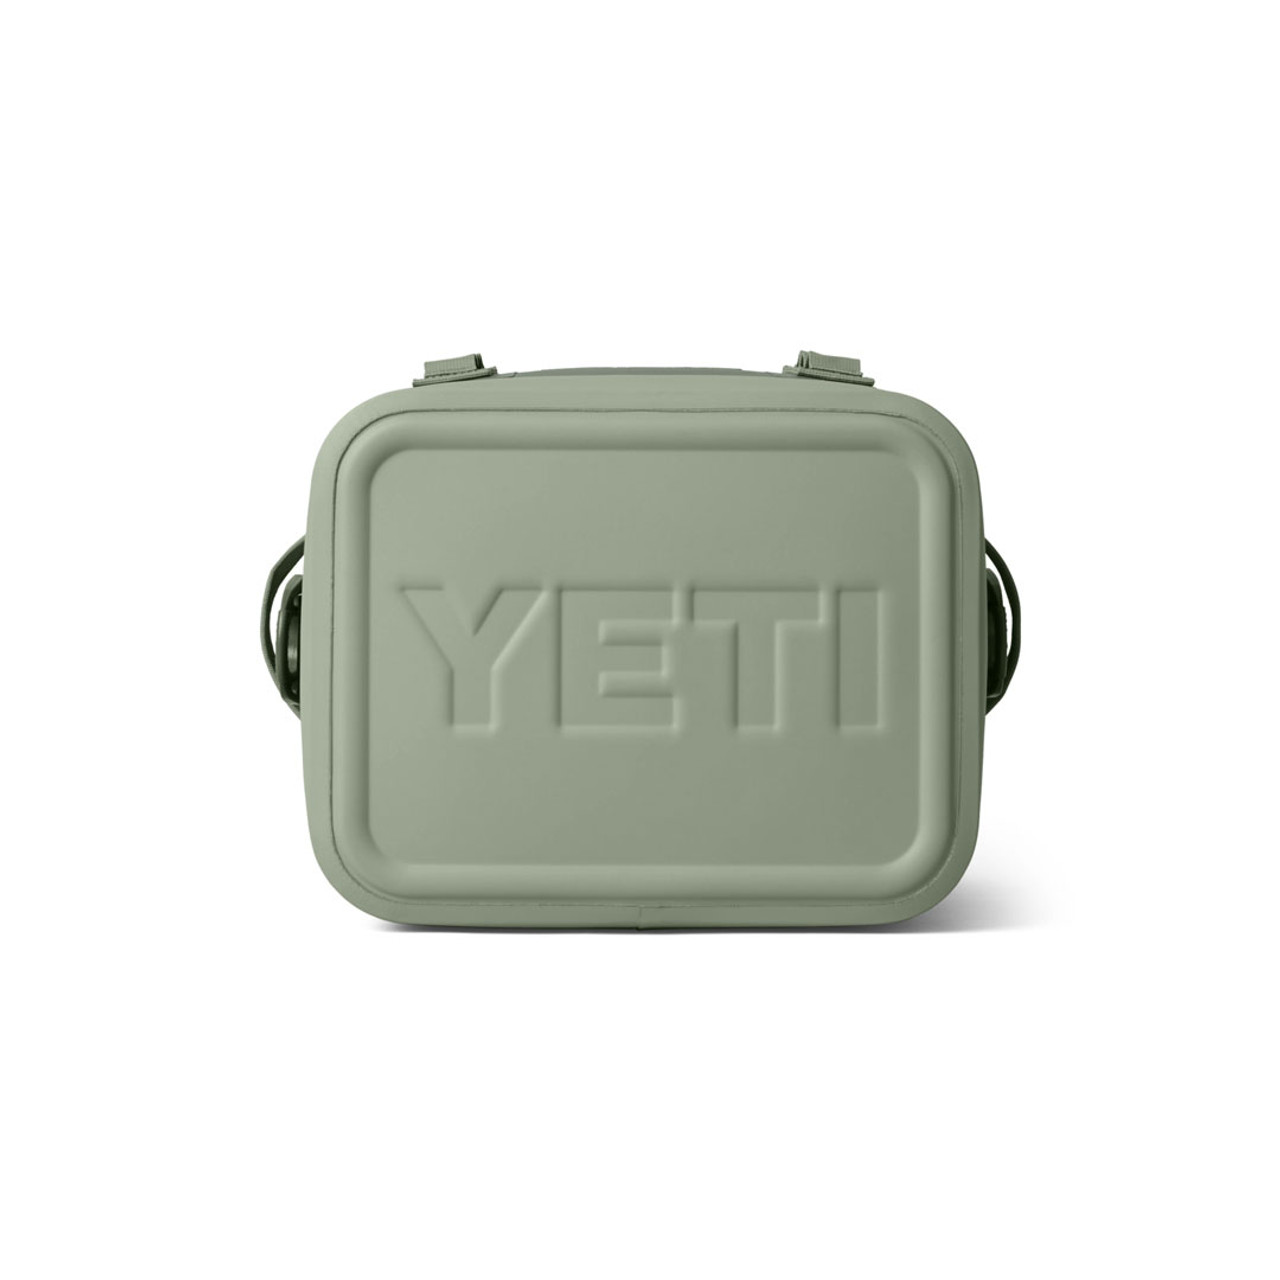 Yeti Hopper Flip 18 Soft Cooler - Camp Green